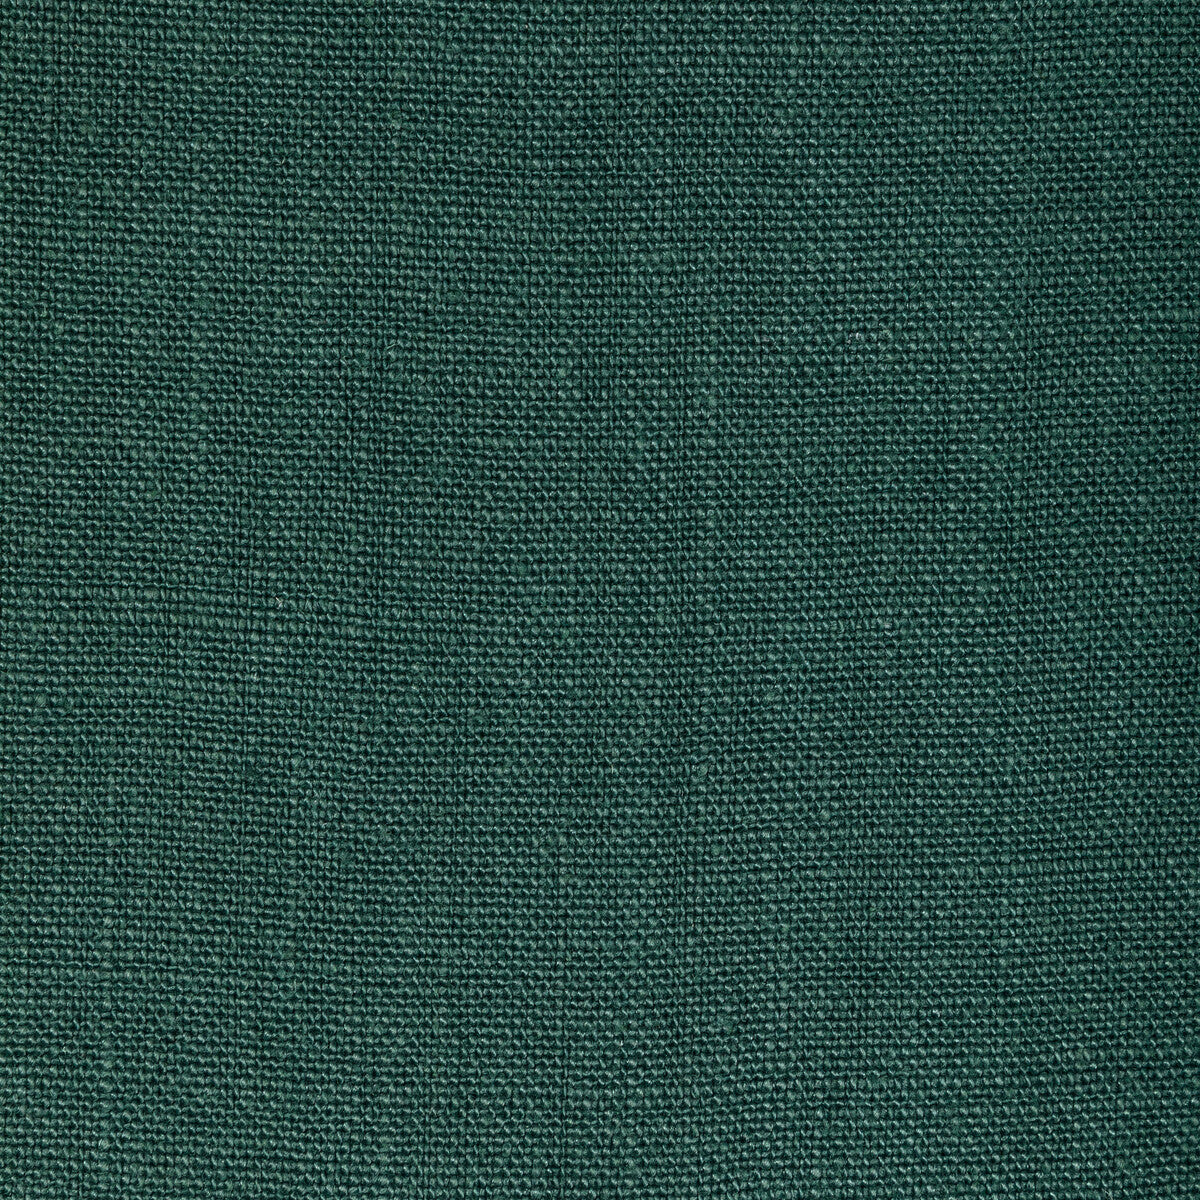 Kravet Basics fabric in 36332-53 color - pattern 36332.53.0 - by Kravet Basics